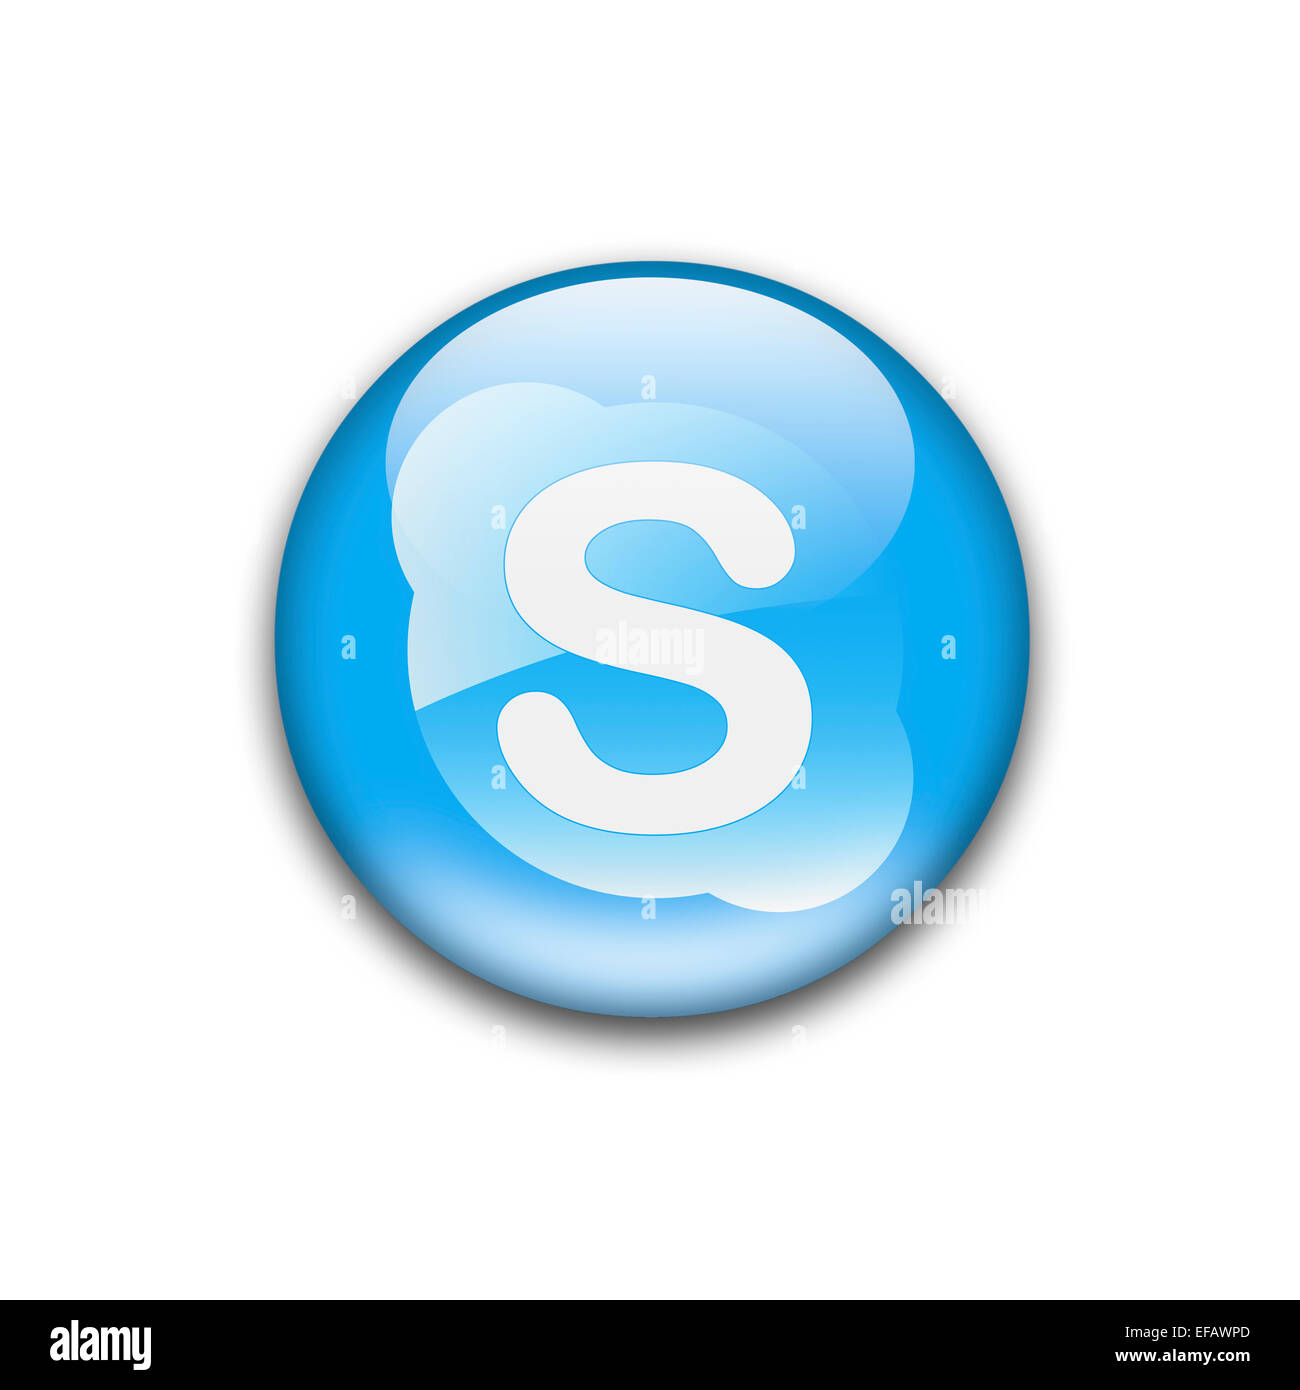 Skype logo icon flag emblem Stock Photo